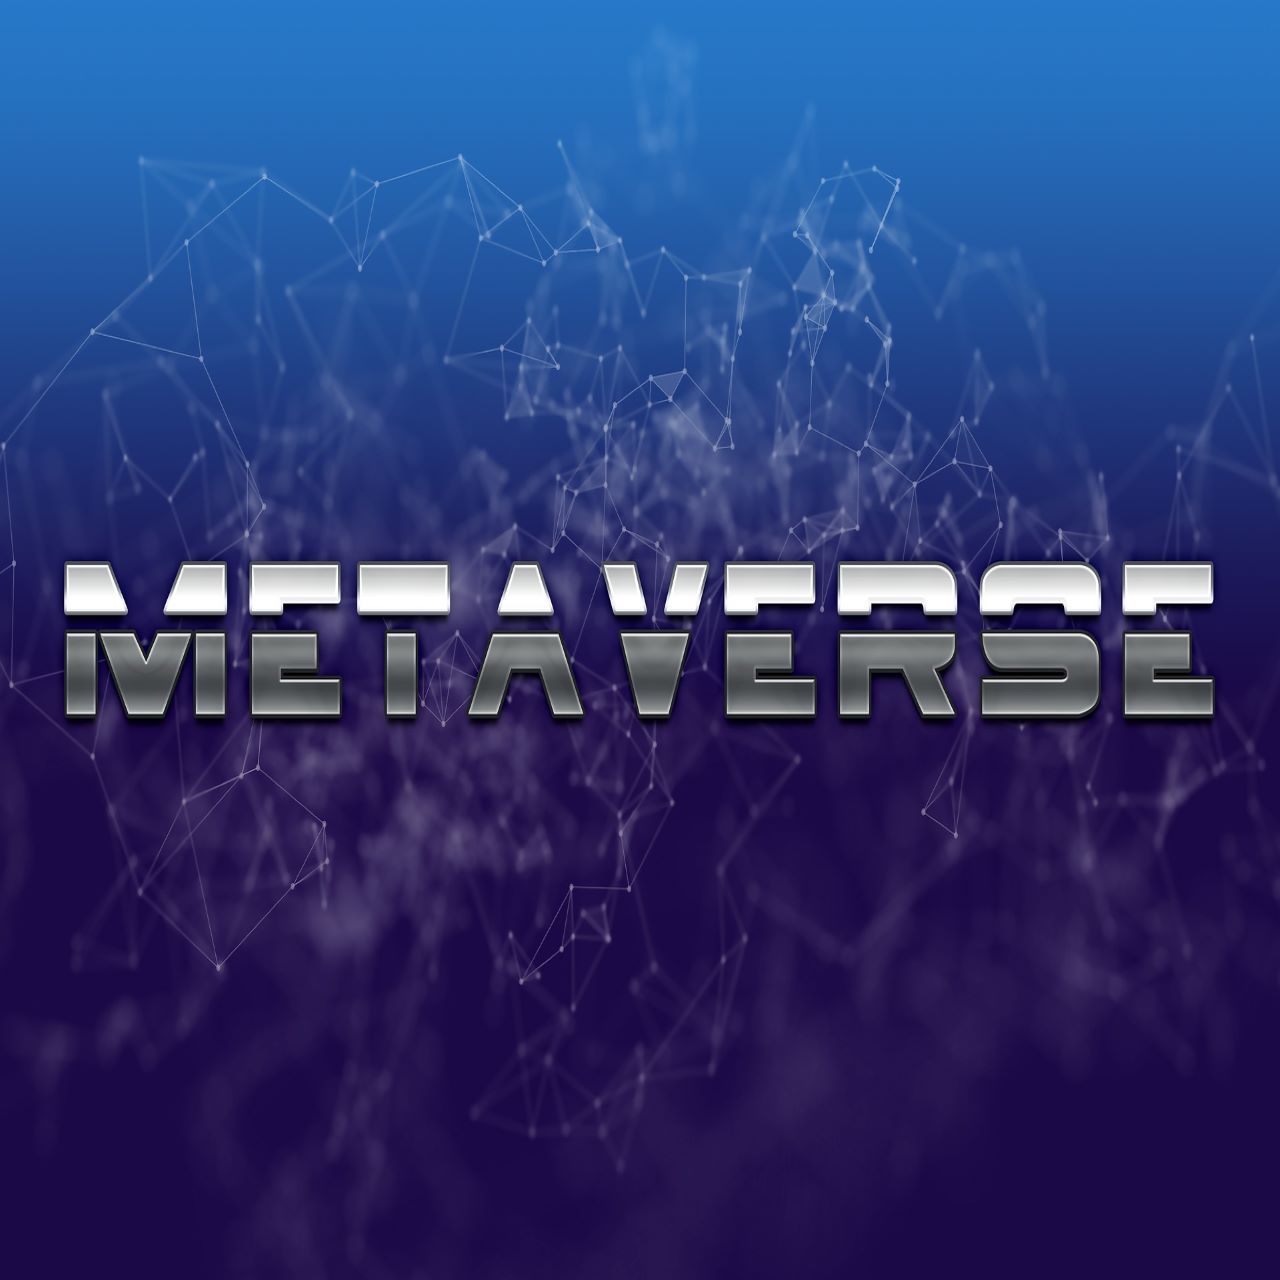 metaverse-g00aeb2251_1920